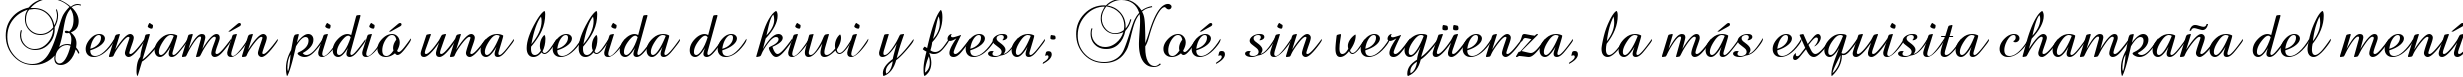 Пример написания шрифтом BrockScript текста на испанском